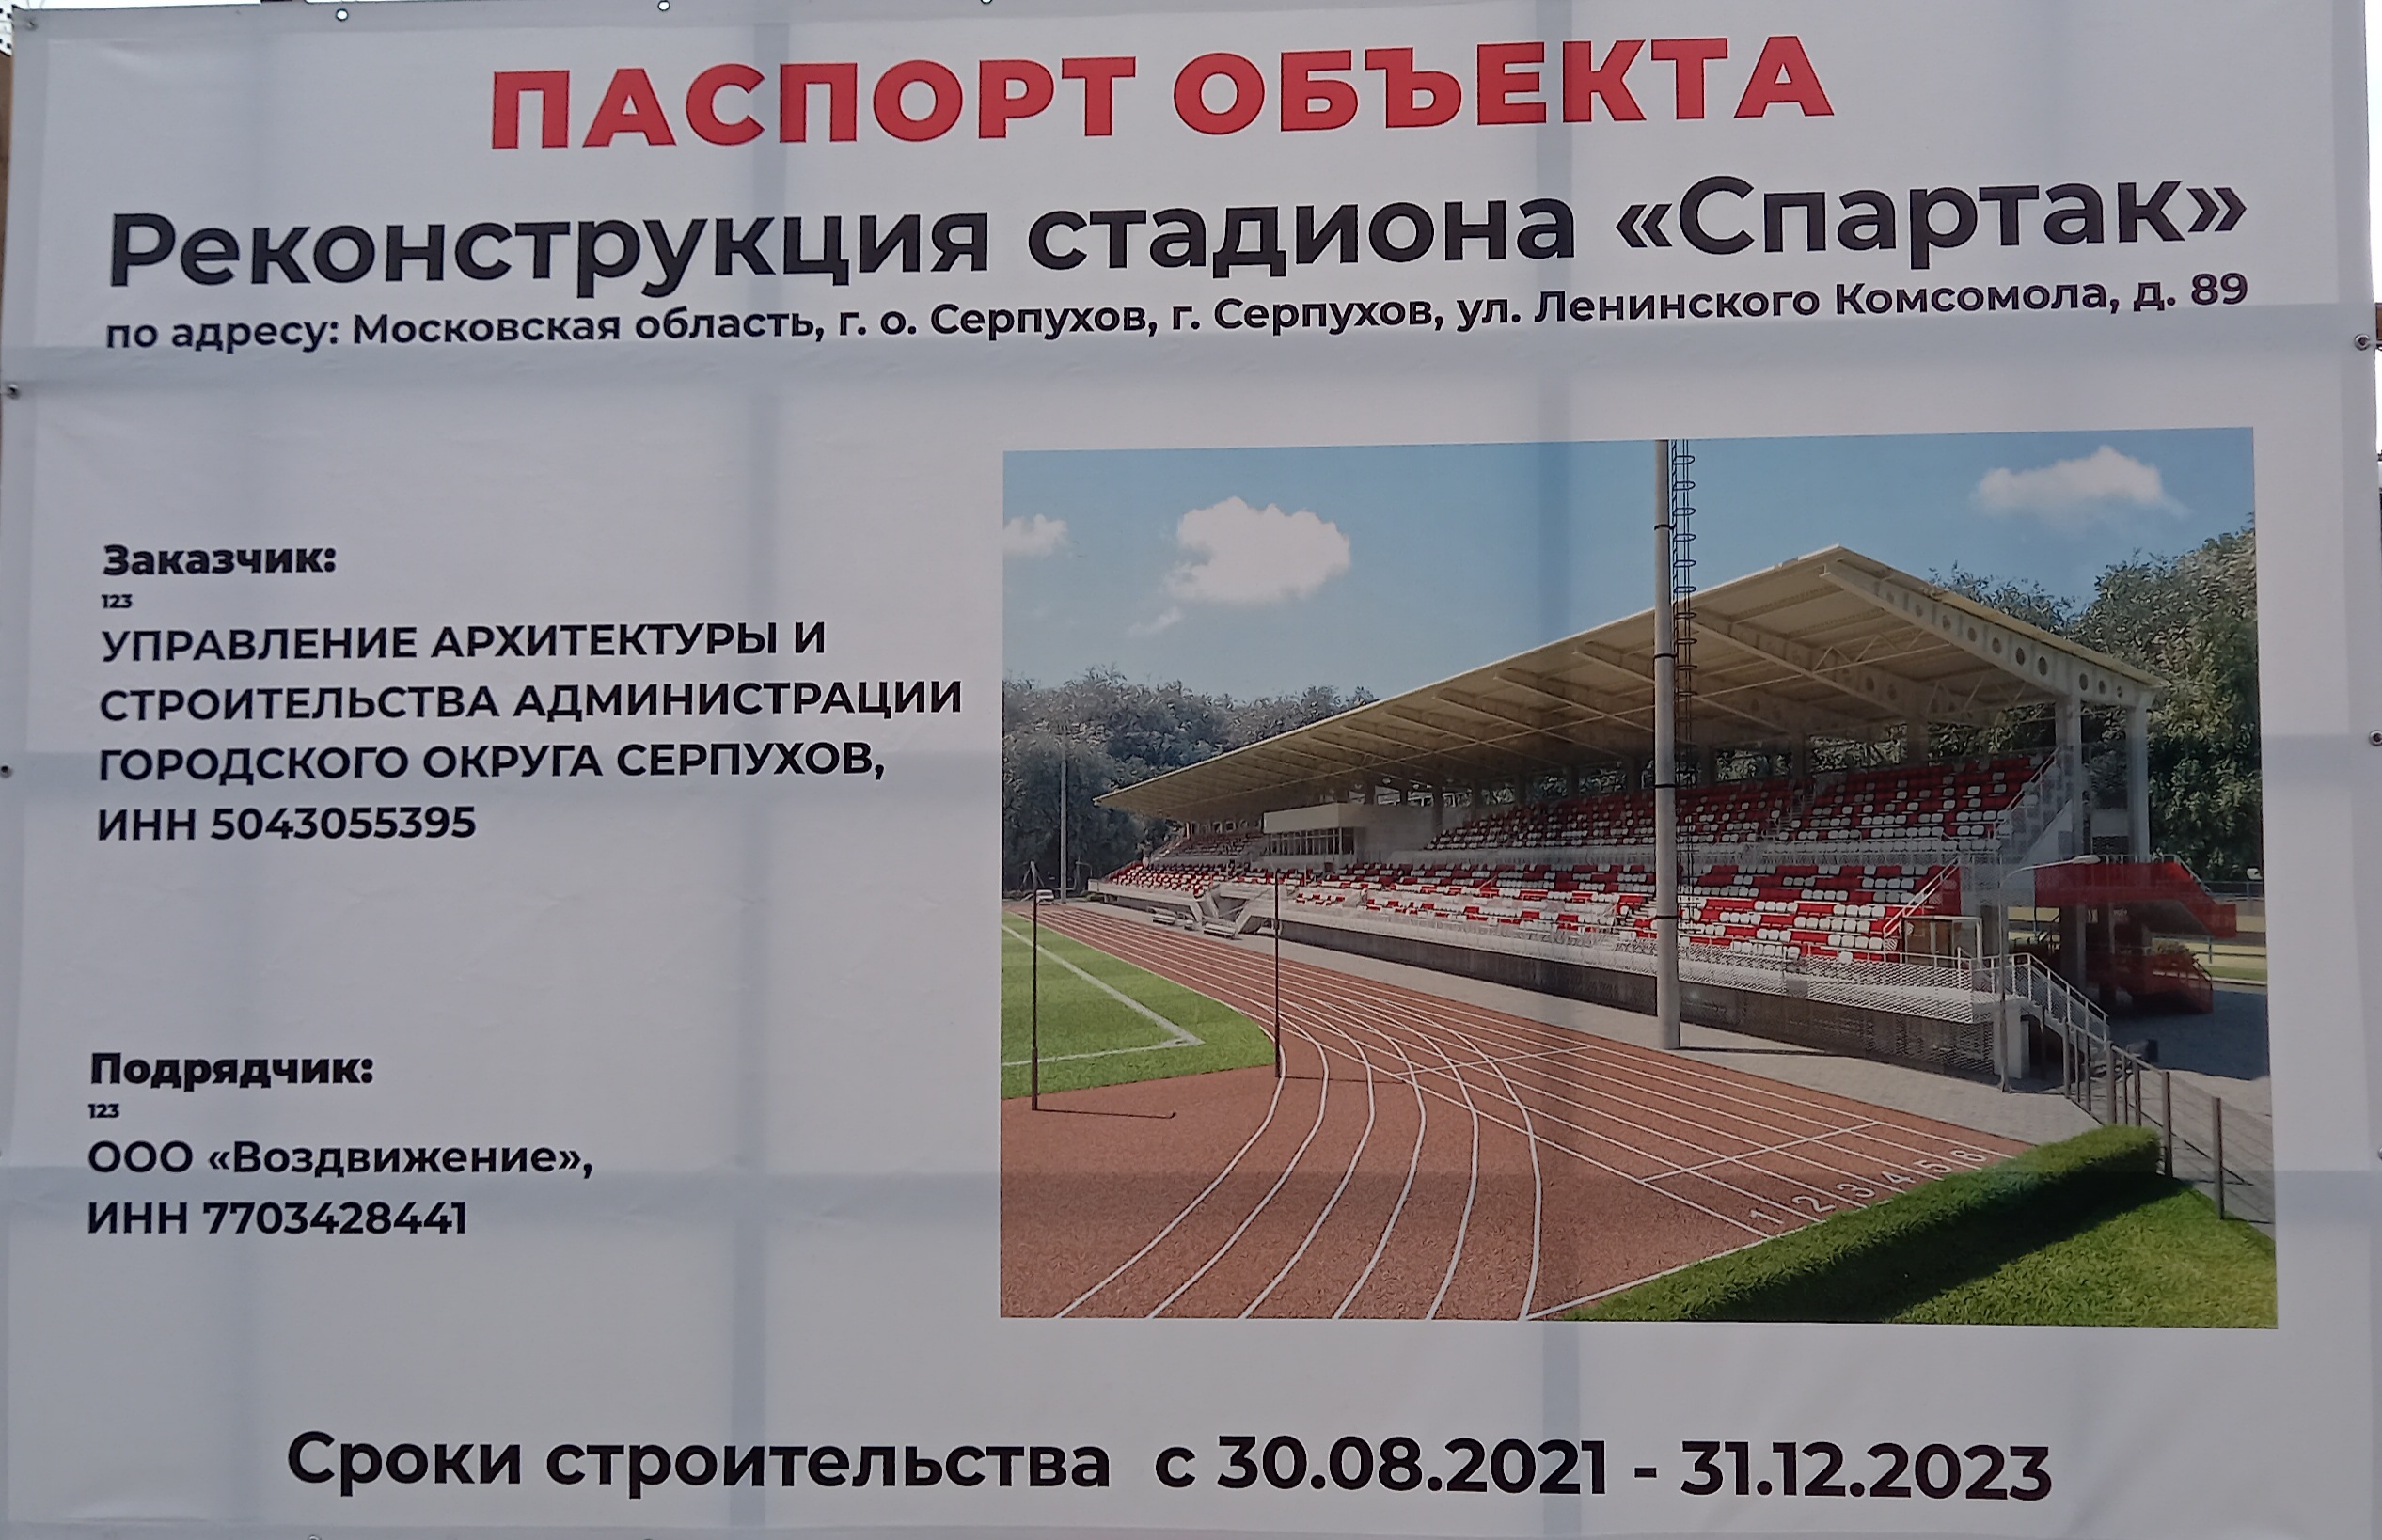 Паспорт объекта реконструкция стадиона Спартак